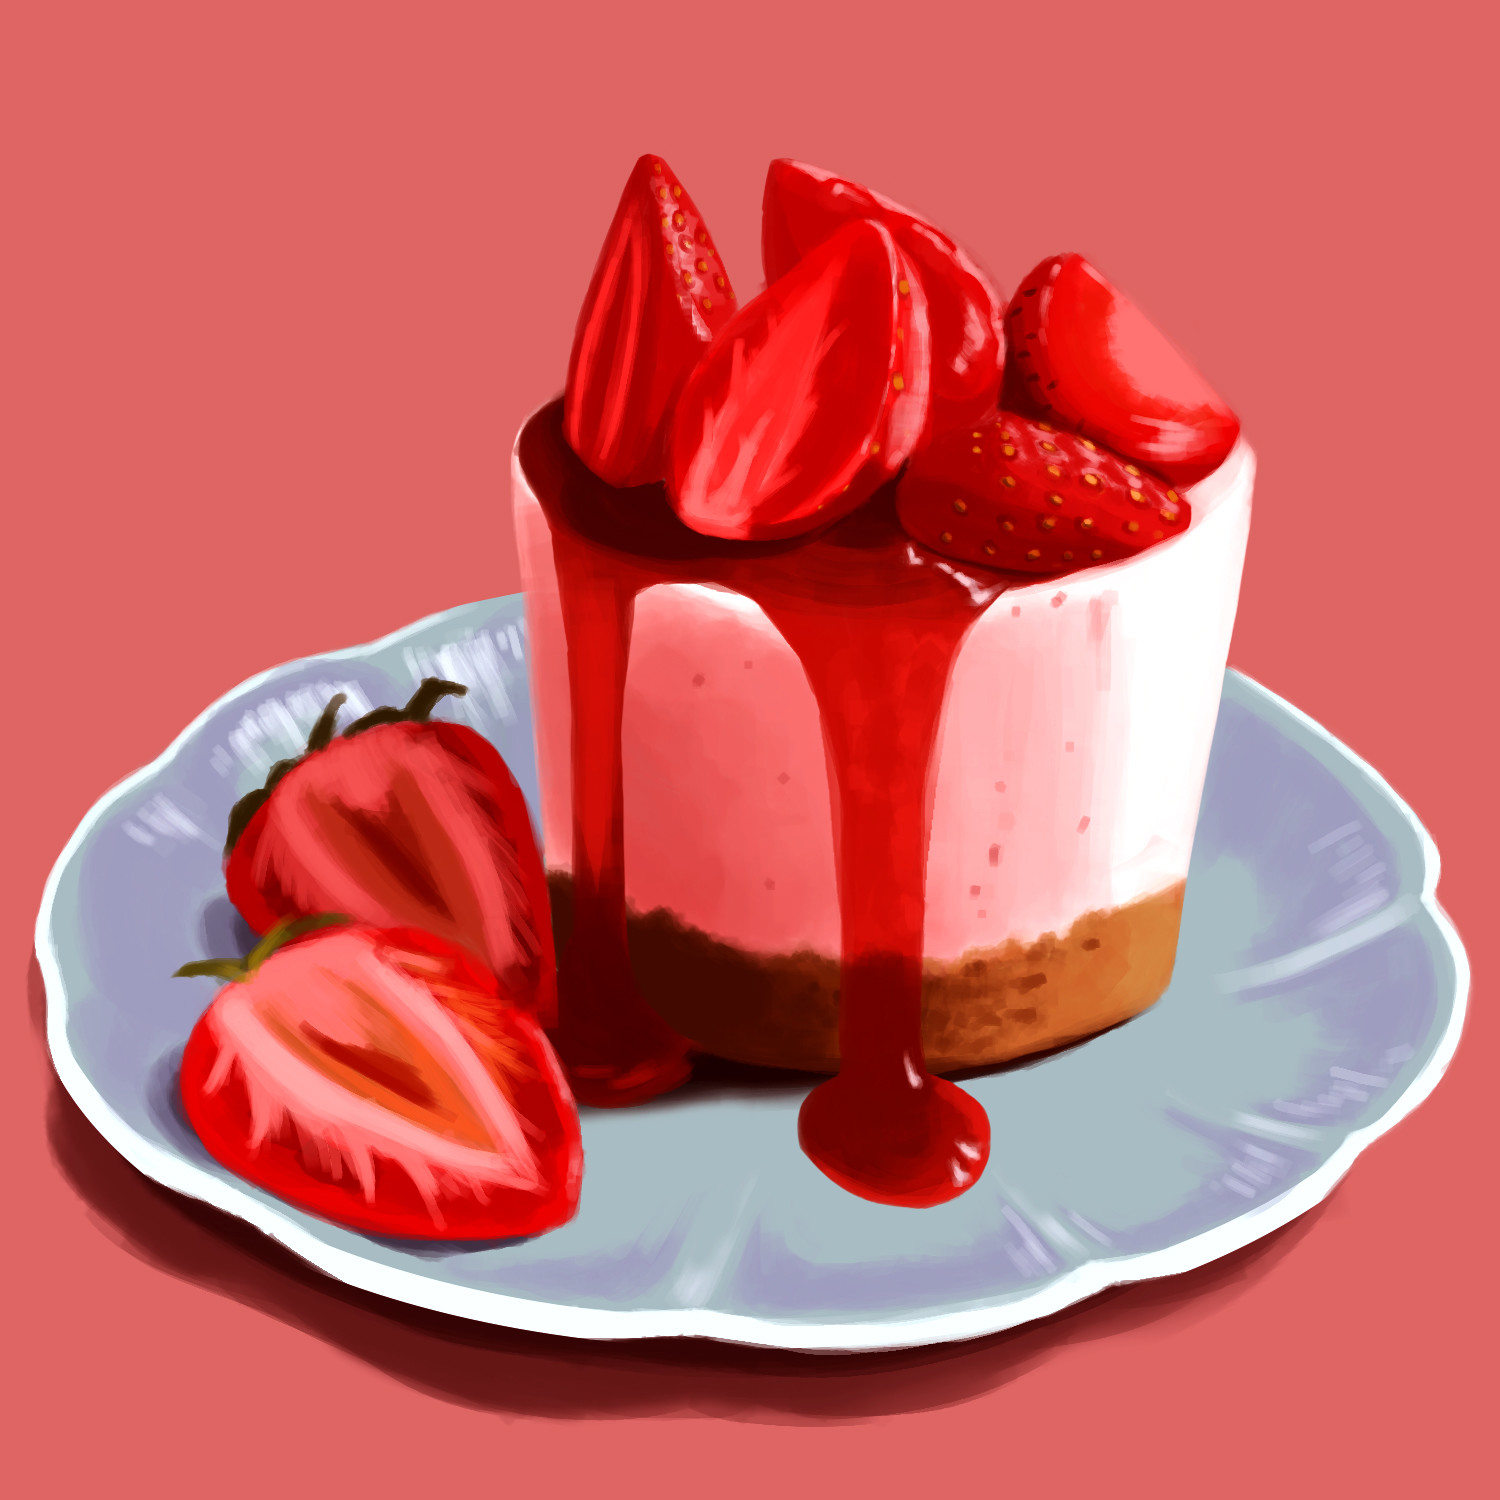 ArtStation - Strawberry shortcake